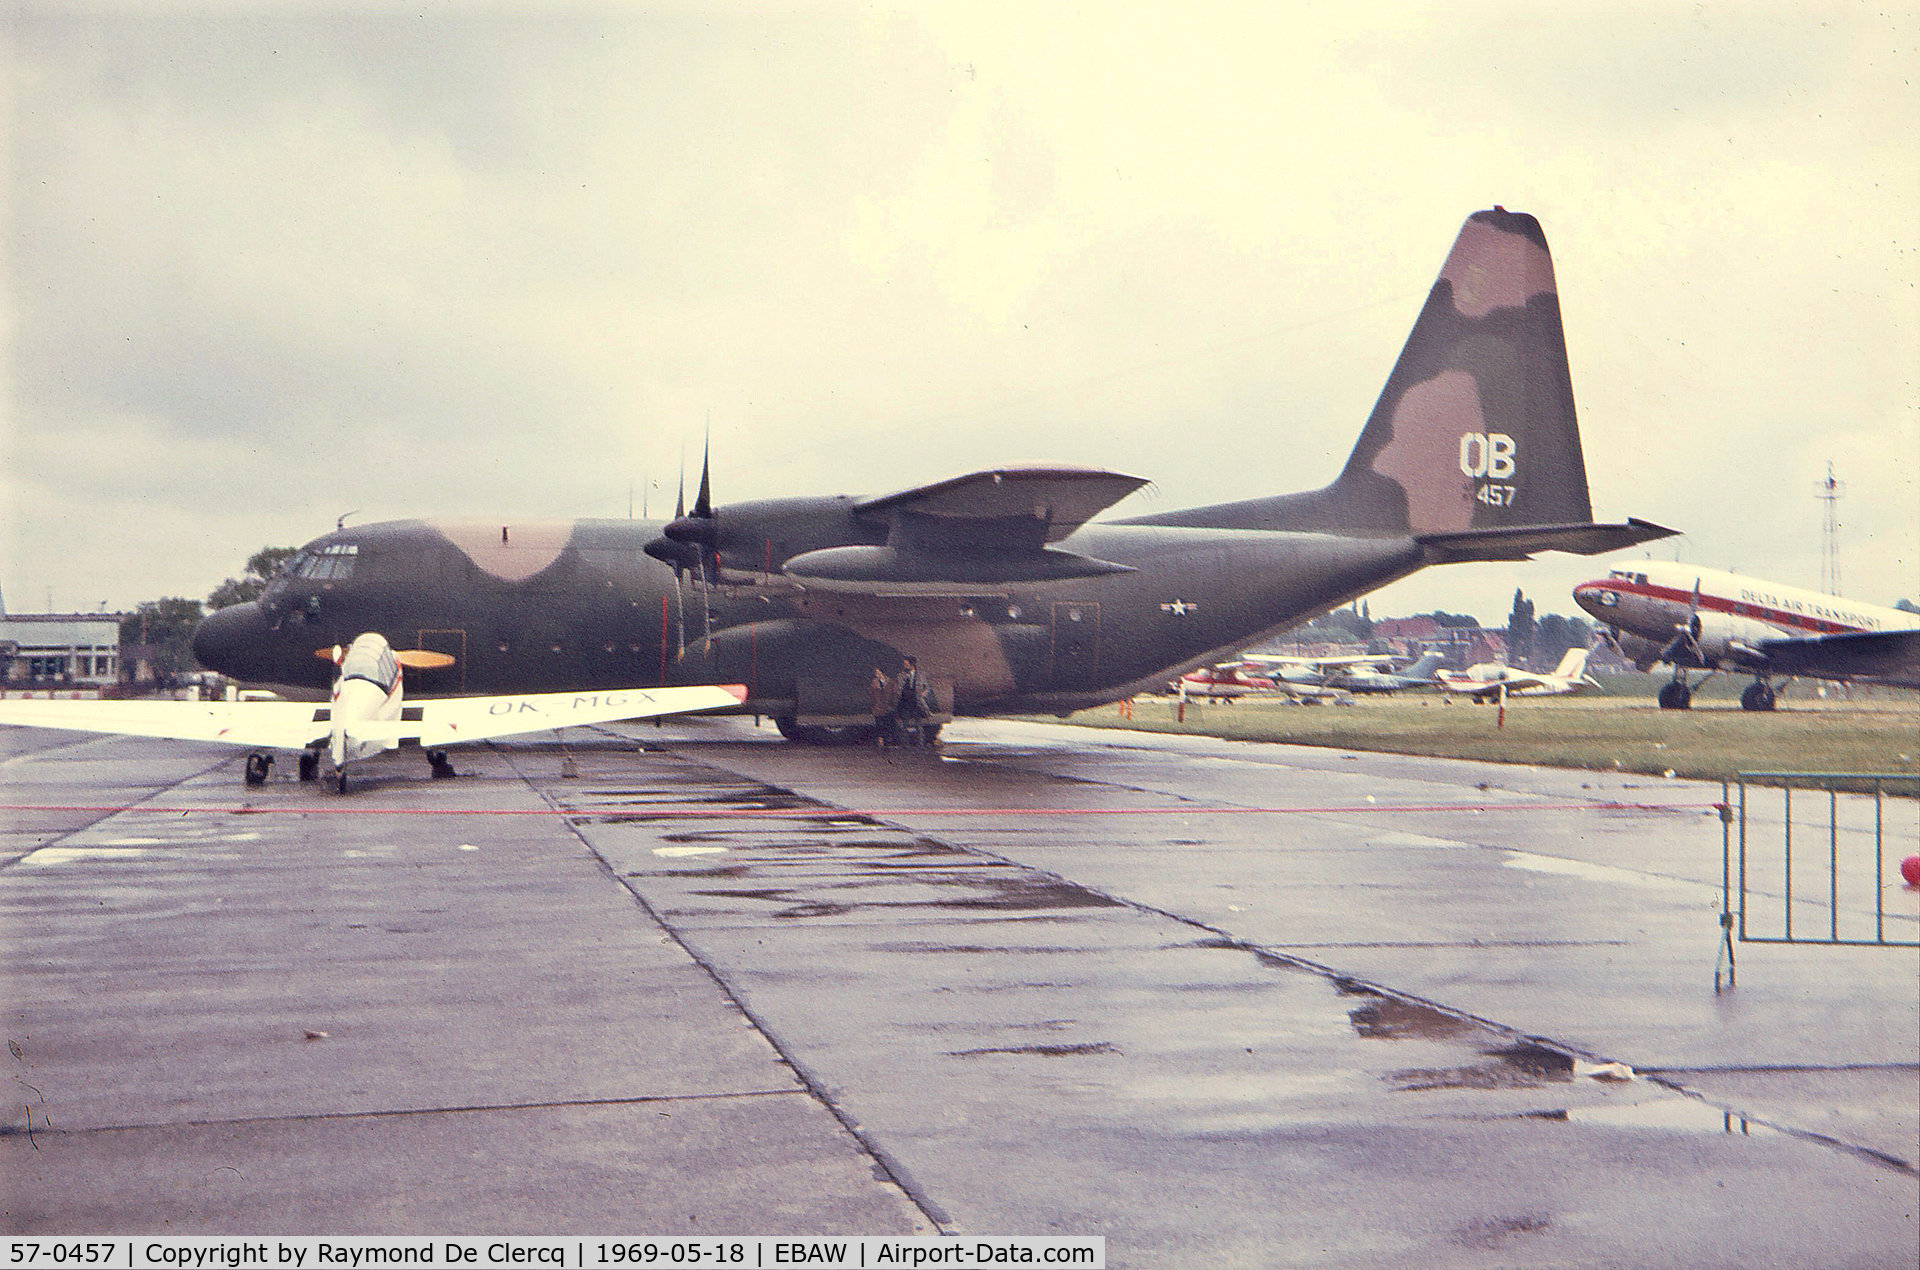 57-0457, 1957 Lockheed C-130A Hercules C/N 182-3164, At the Antwerp airshow in 1969.